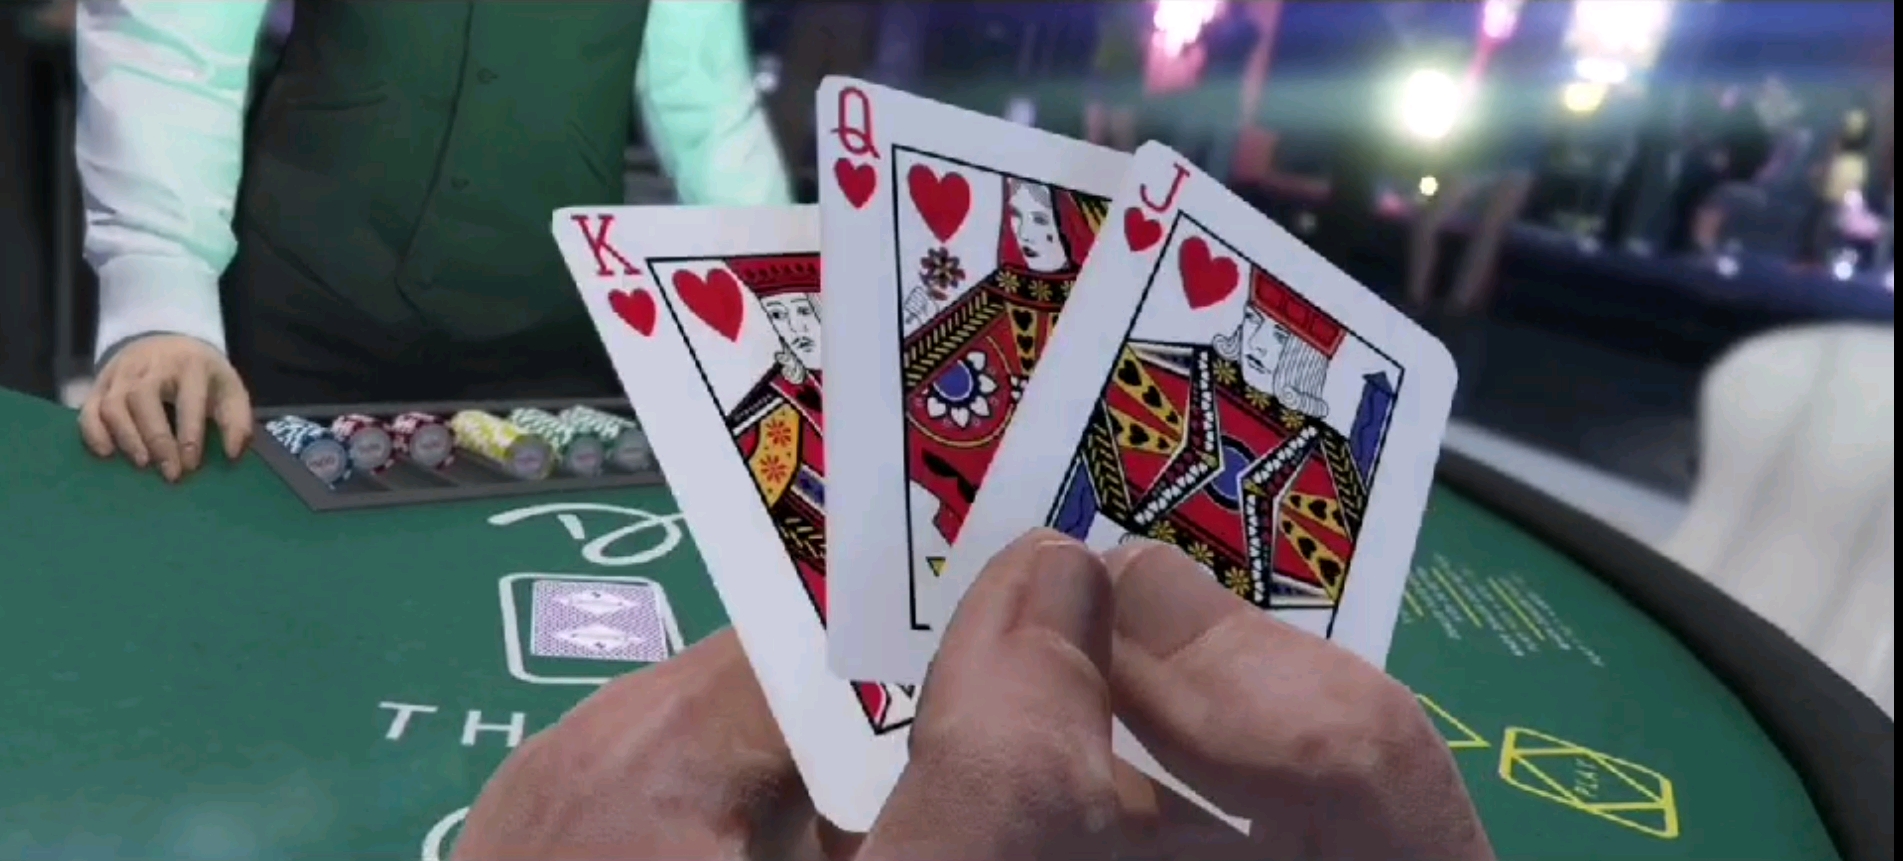 三张扑克,官方中文叫三张扑克,其实我猜测就是"炸金花"(我们这叫炸